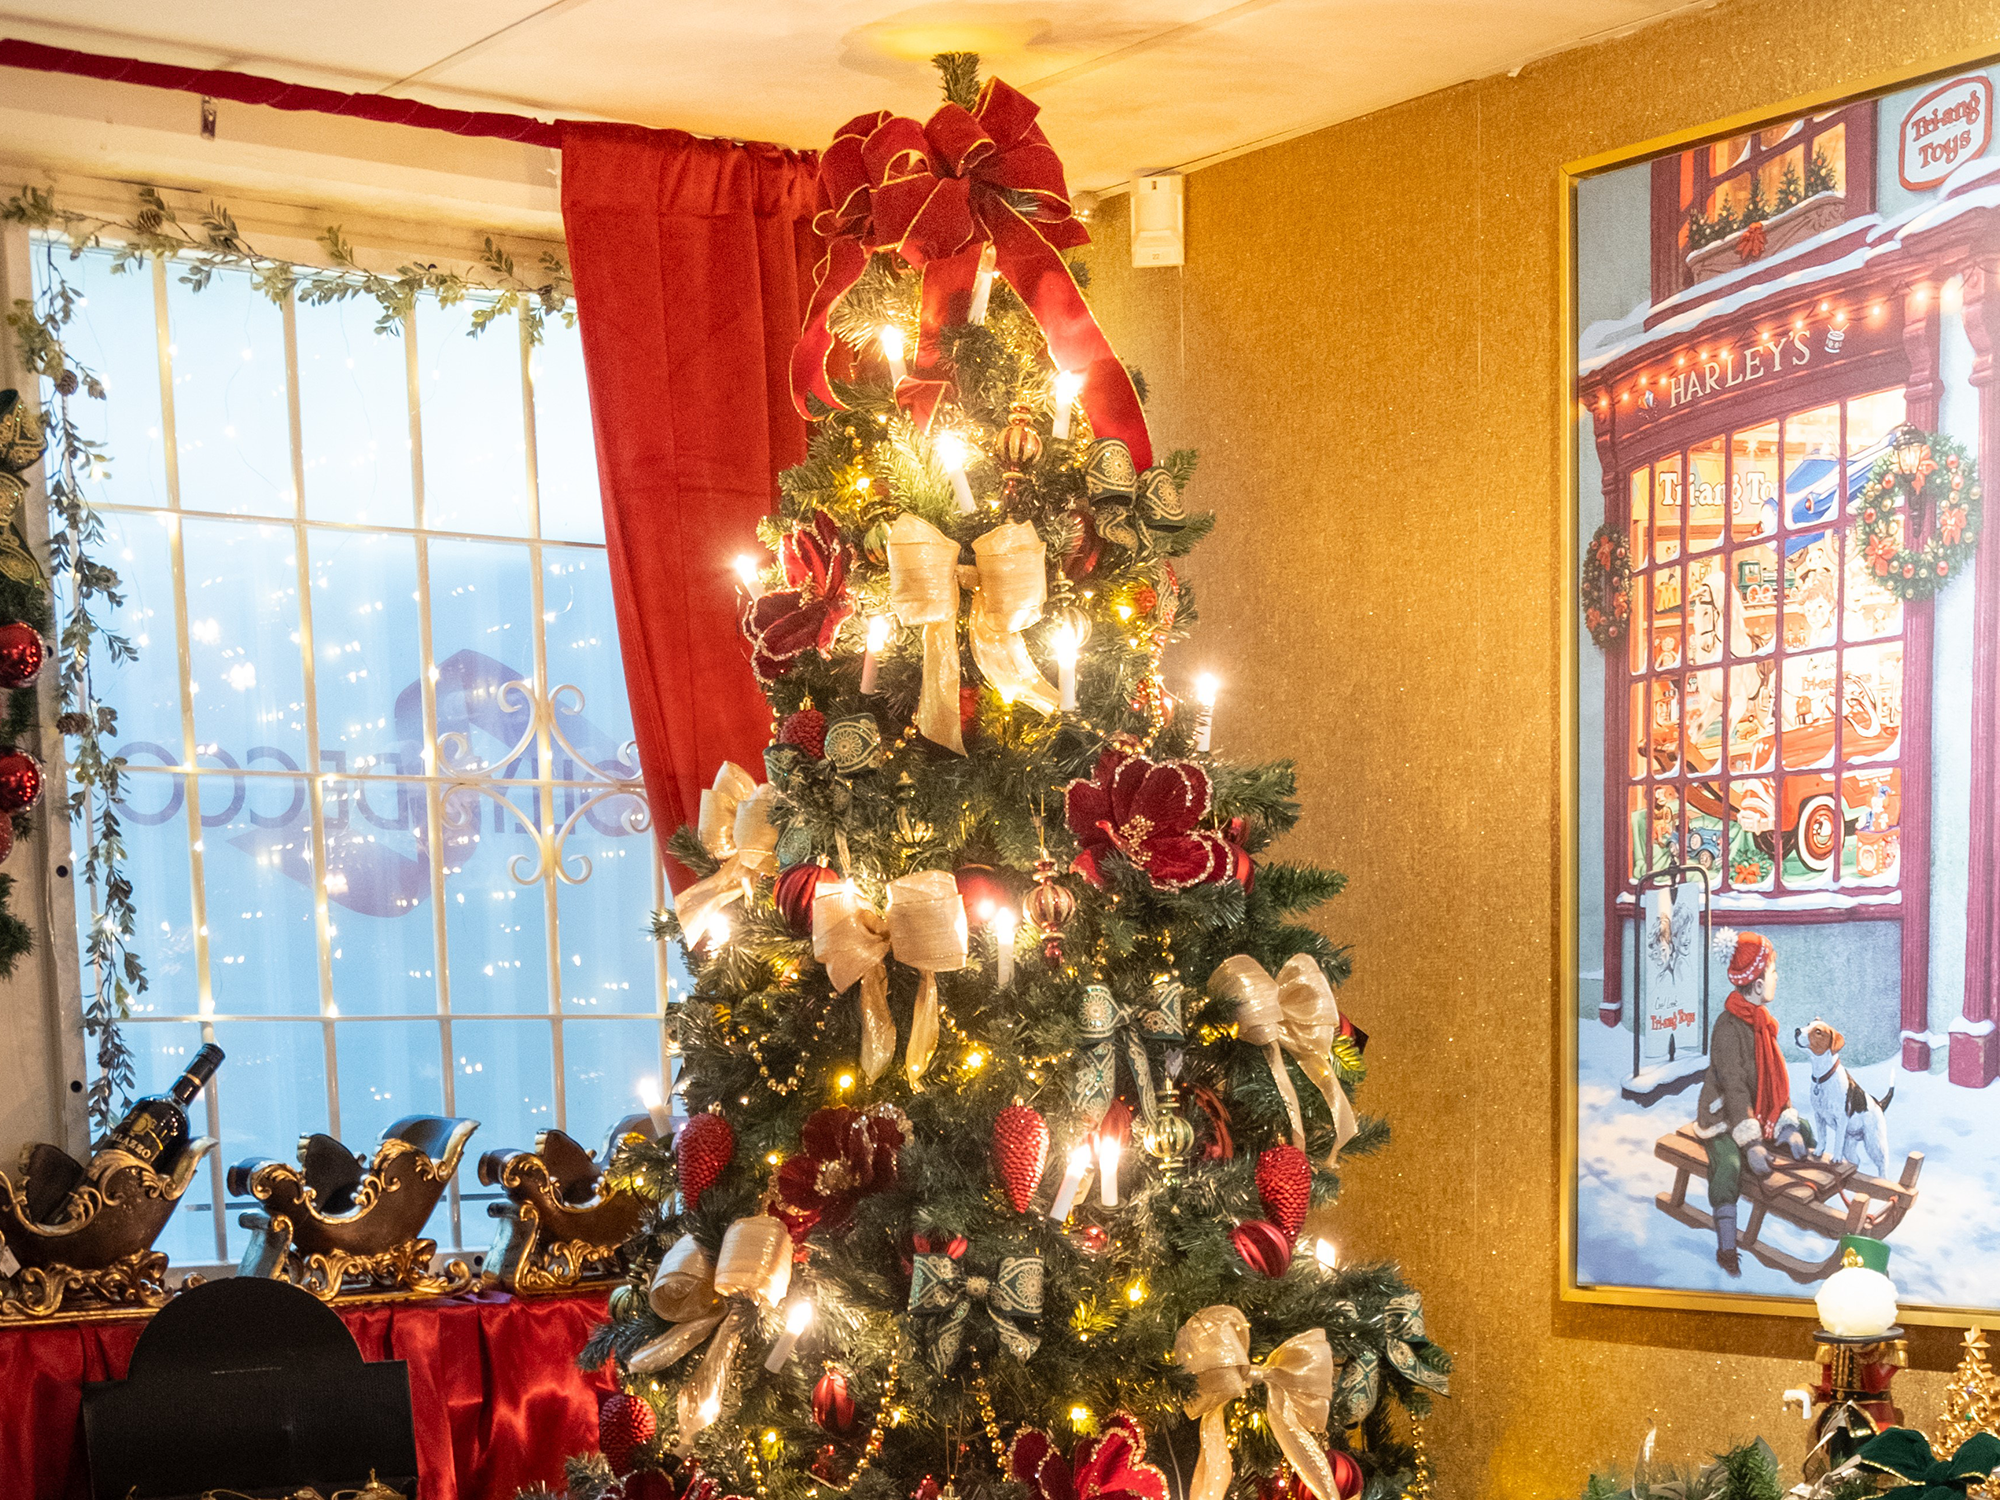 Julpyntat rum med en julgran i mitten, tre tomteslädar till vänster och en affisch med en pojke som sitter på en släde med en hund och tittar på ett julskyltfönster till höger.